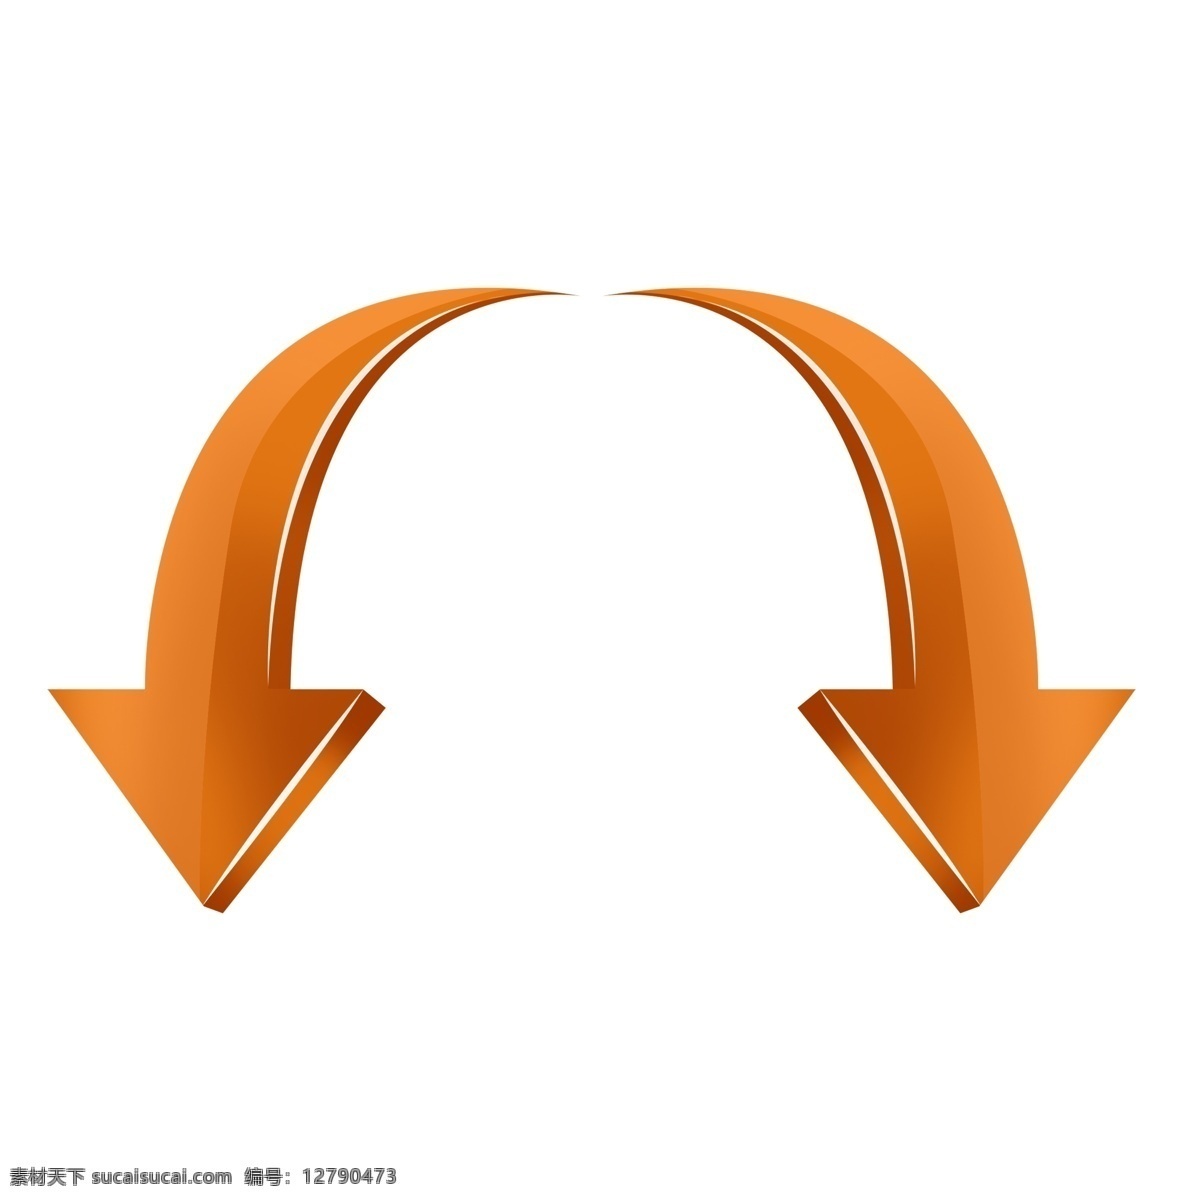 橙色 渐变 箭头 转换 图标 方向 扁平化 矢量 转换箭头